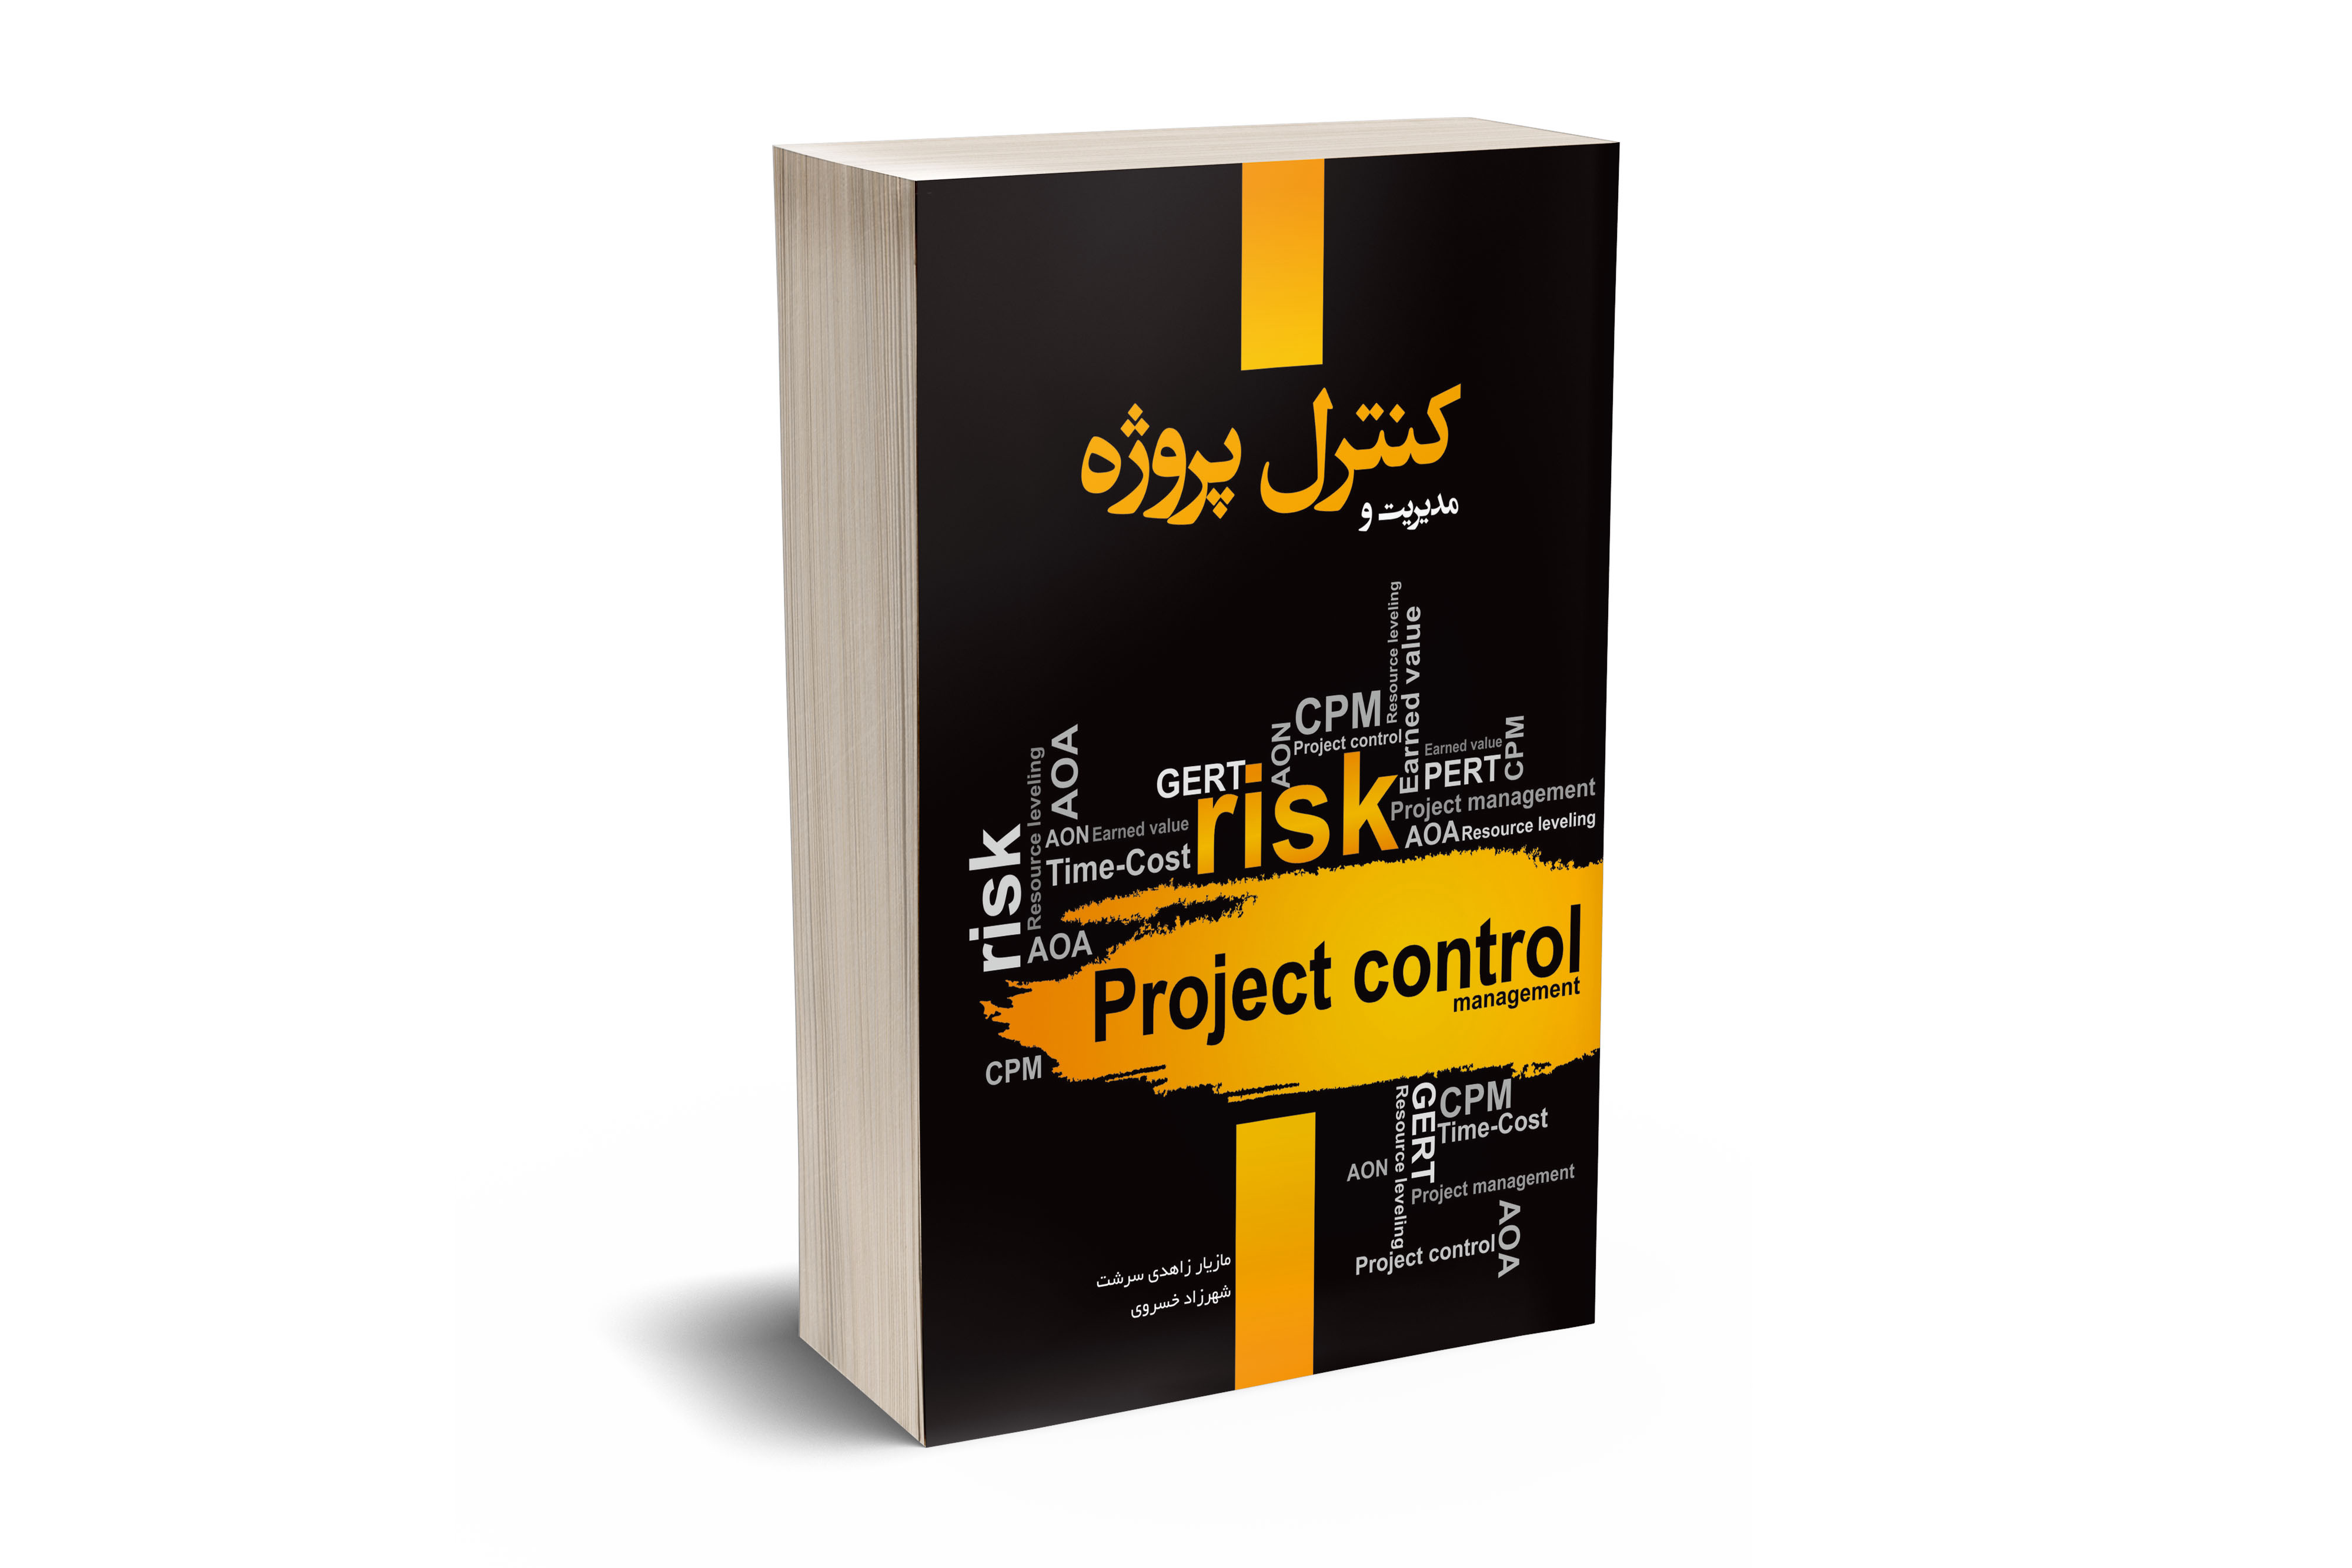 مدیریت و کنترل پروژه